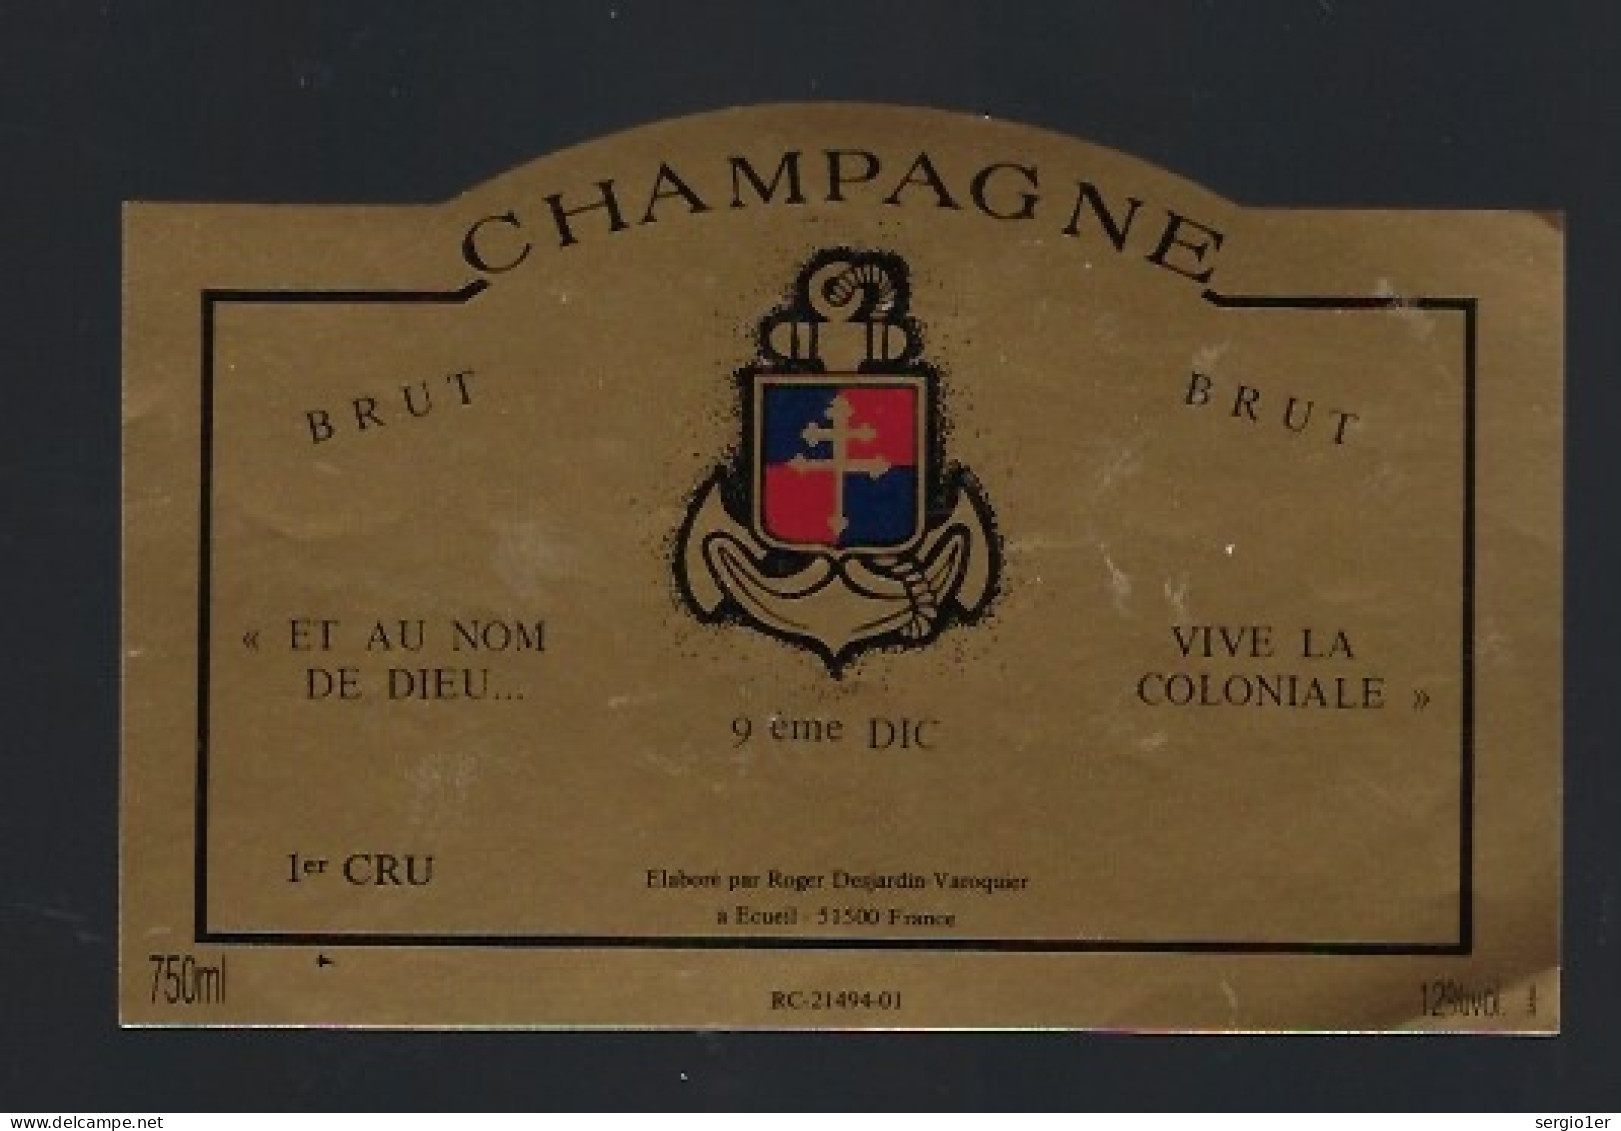 Etiquette Champagne Brut Et Au Nom De Dieu...vive La Coloniale 9ème DIC Roger Dejardin Varoquier  Marne 51 " Militaire" - Champan